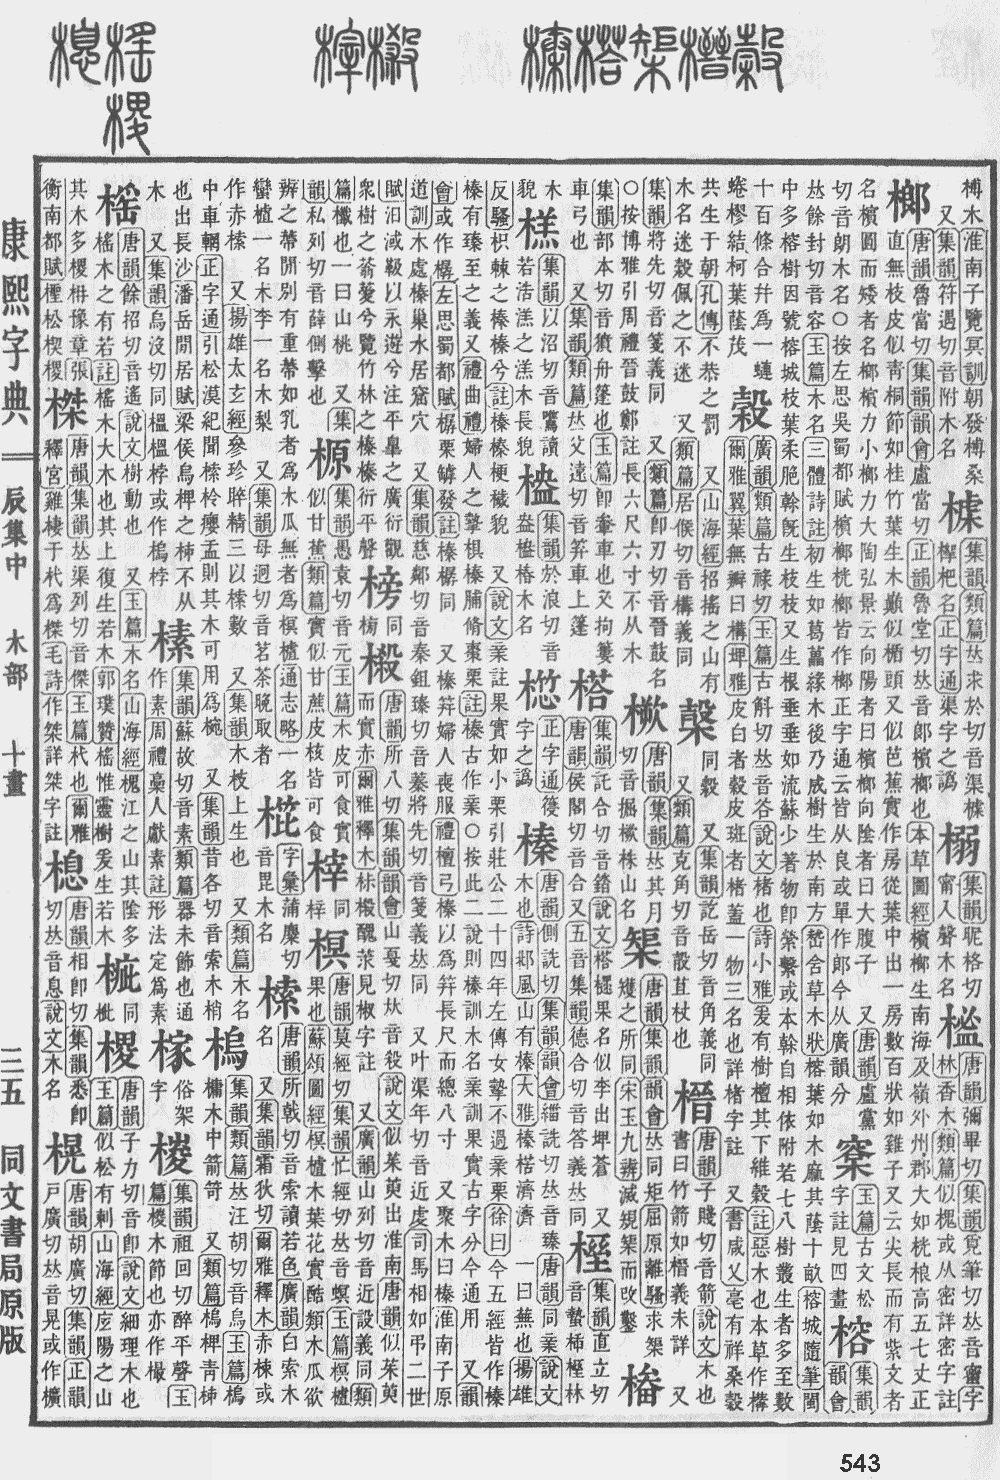 康熙字典第543页图片